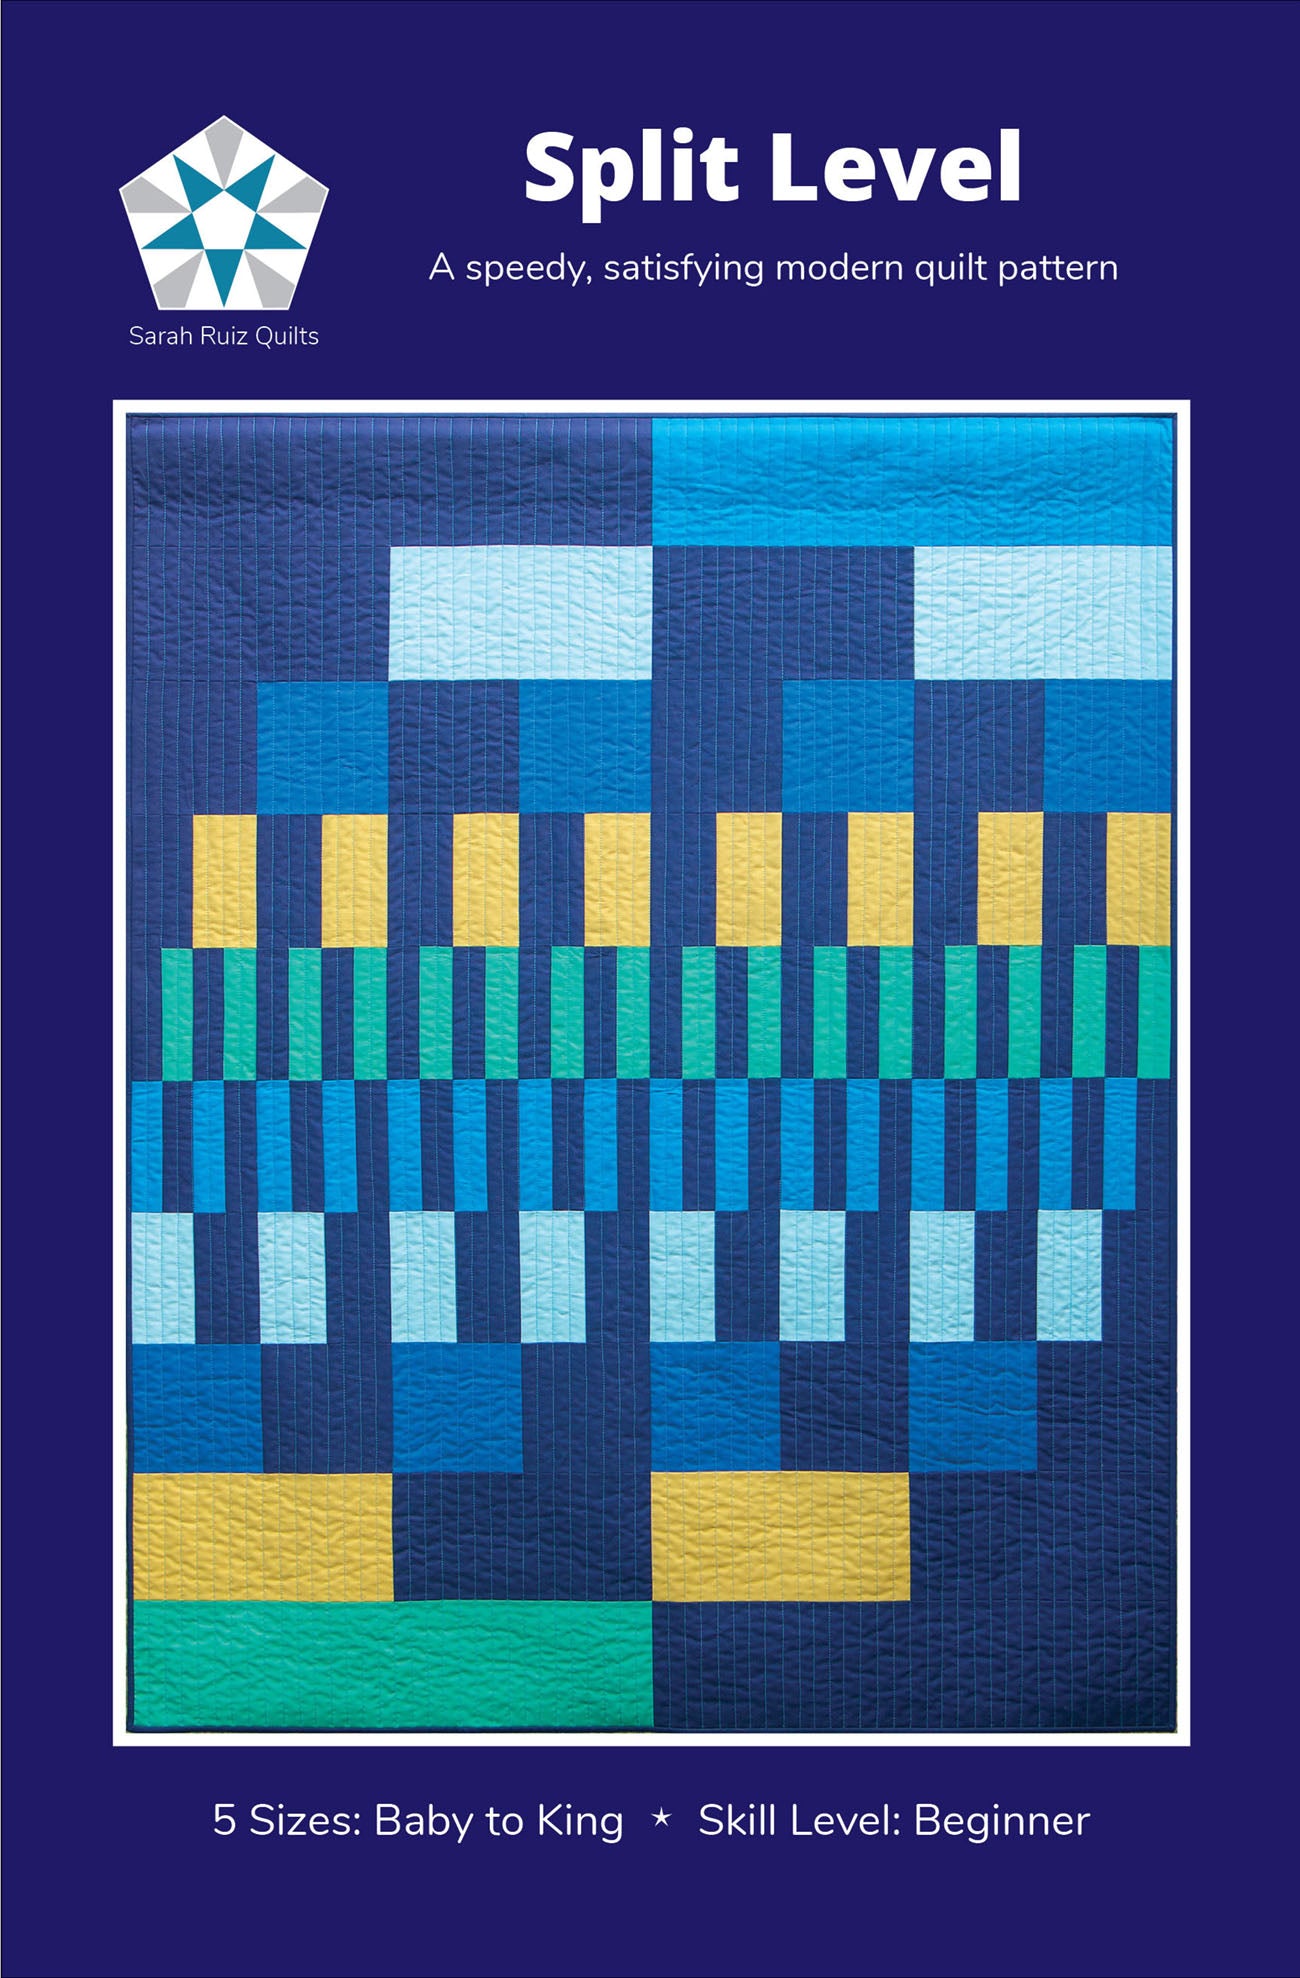 Split Level Quilt Pattern by Sarah Ruiz Quilts